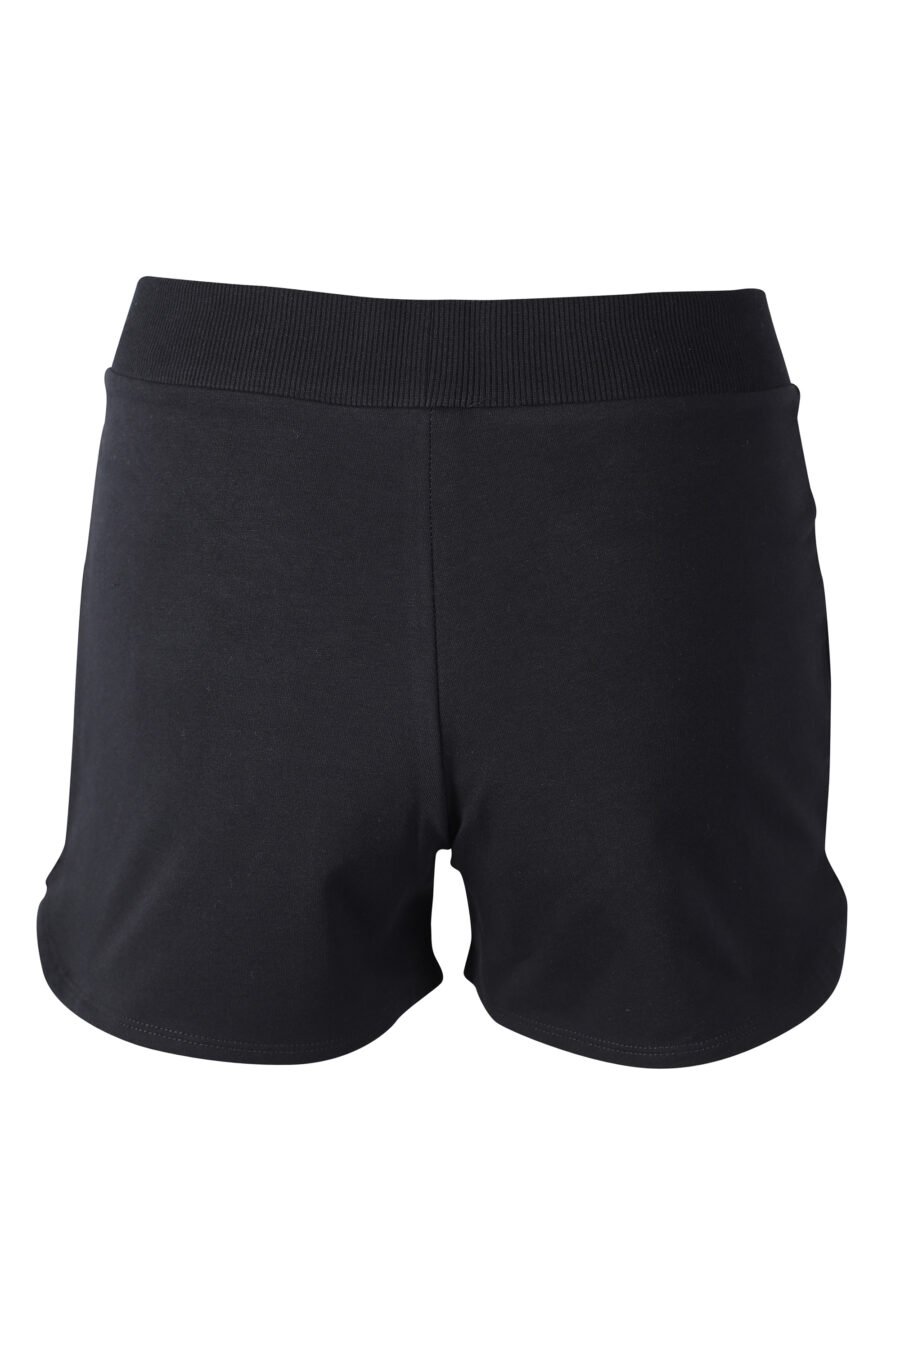 Pantalón de chándal corto negro con minilogo "animal print" - IMG 2291